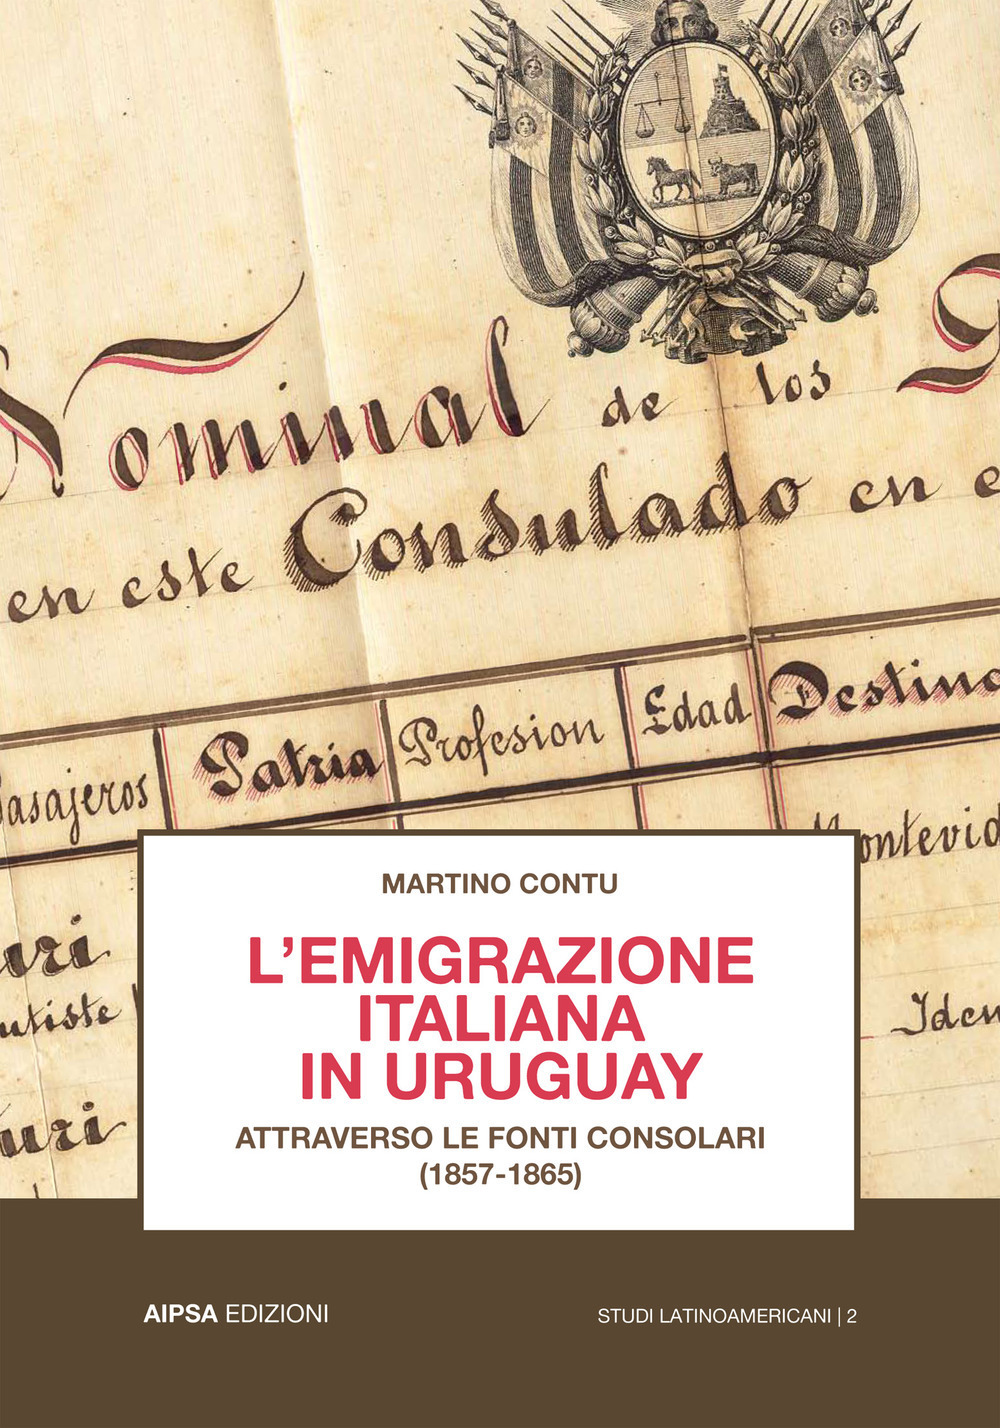 L'emigrazione italiana in Uruguay attraverso le fonti consolari (1857-1865)